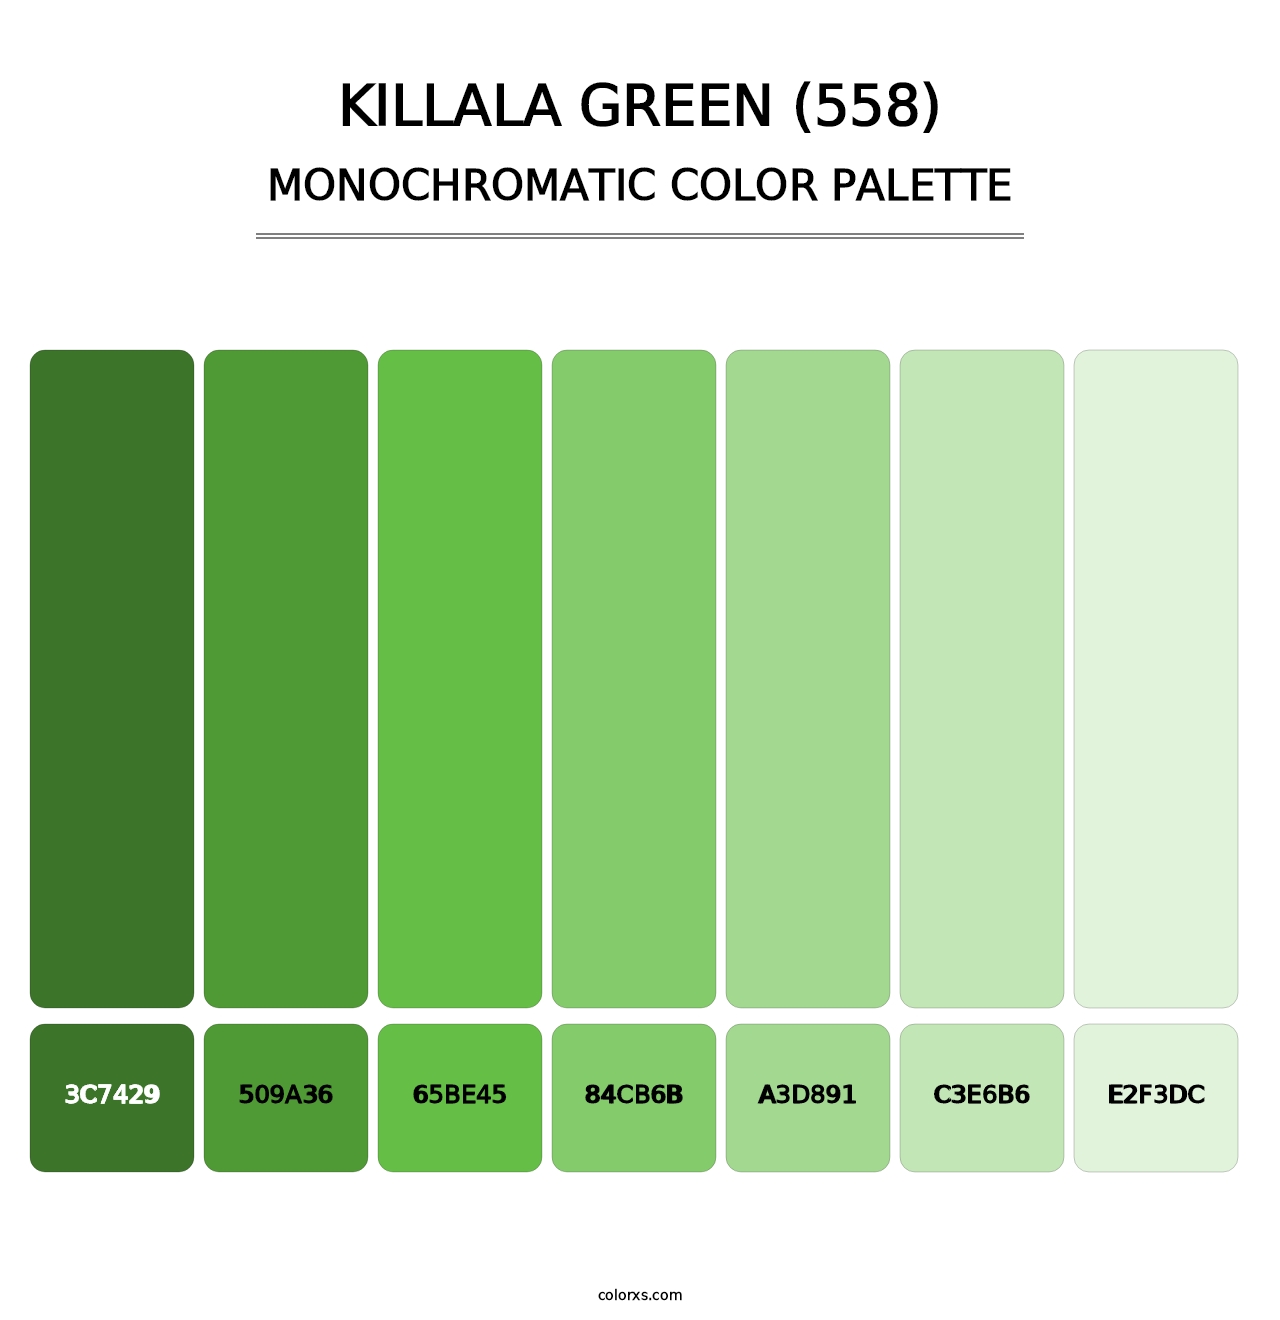 Killala Green (558) - Monochromatic Color Palette